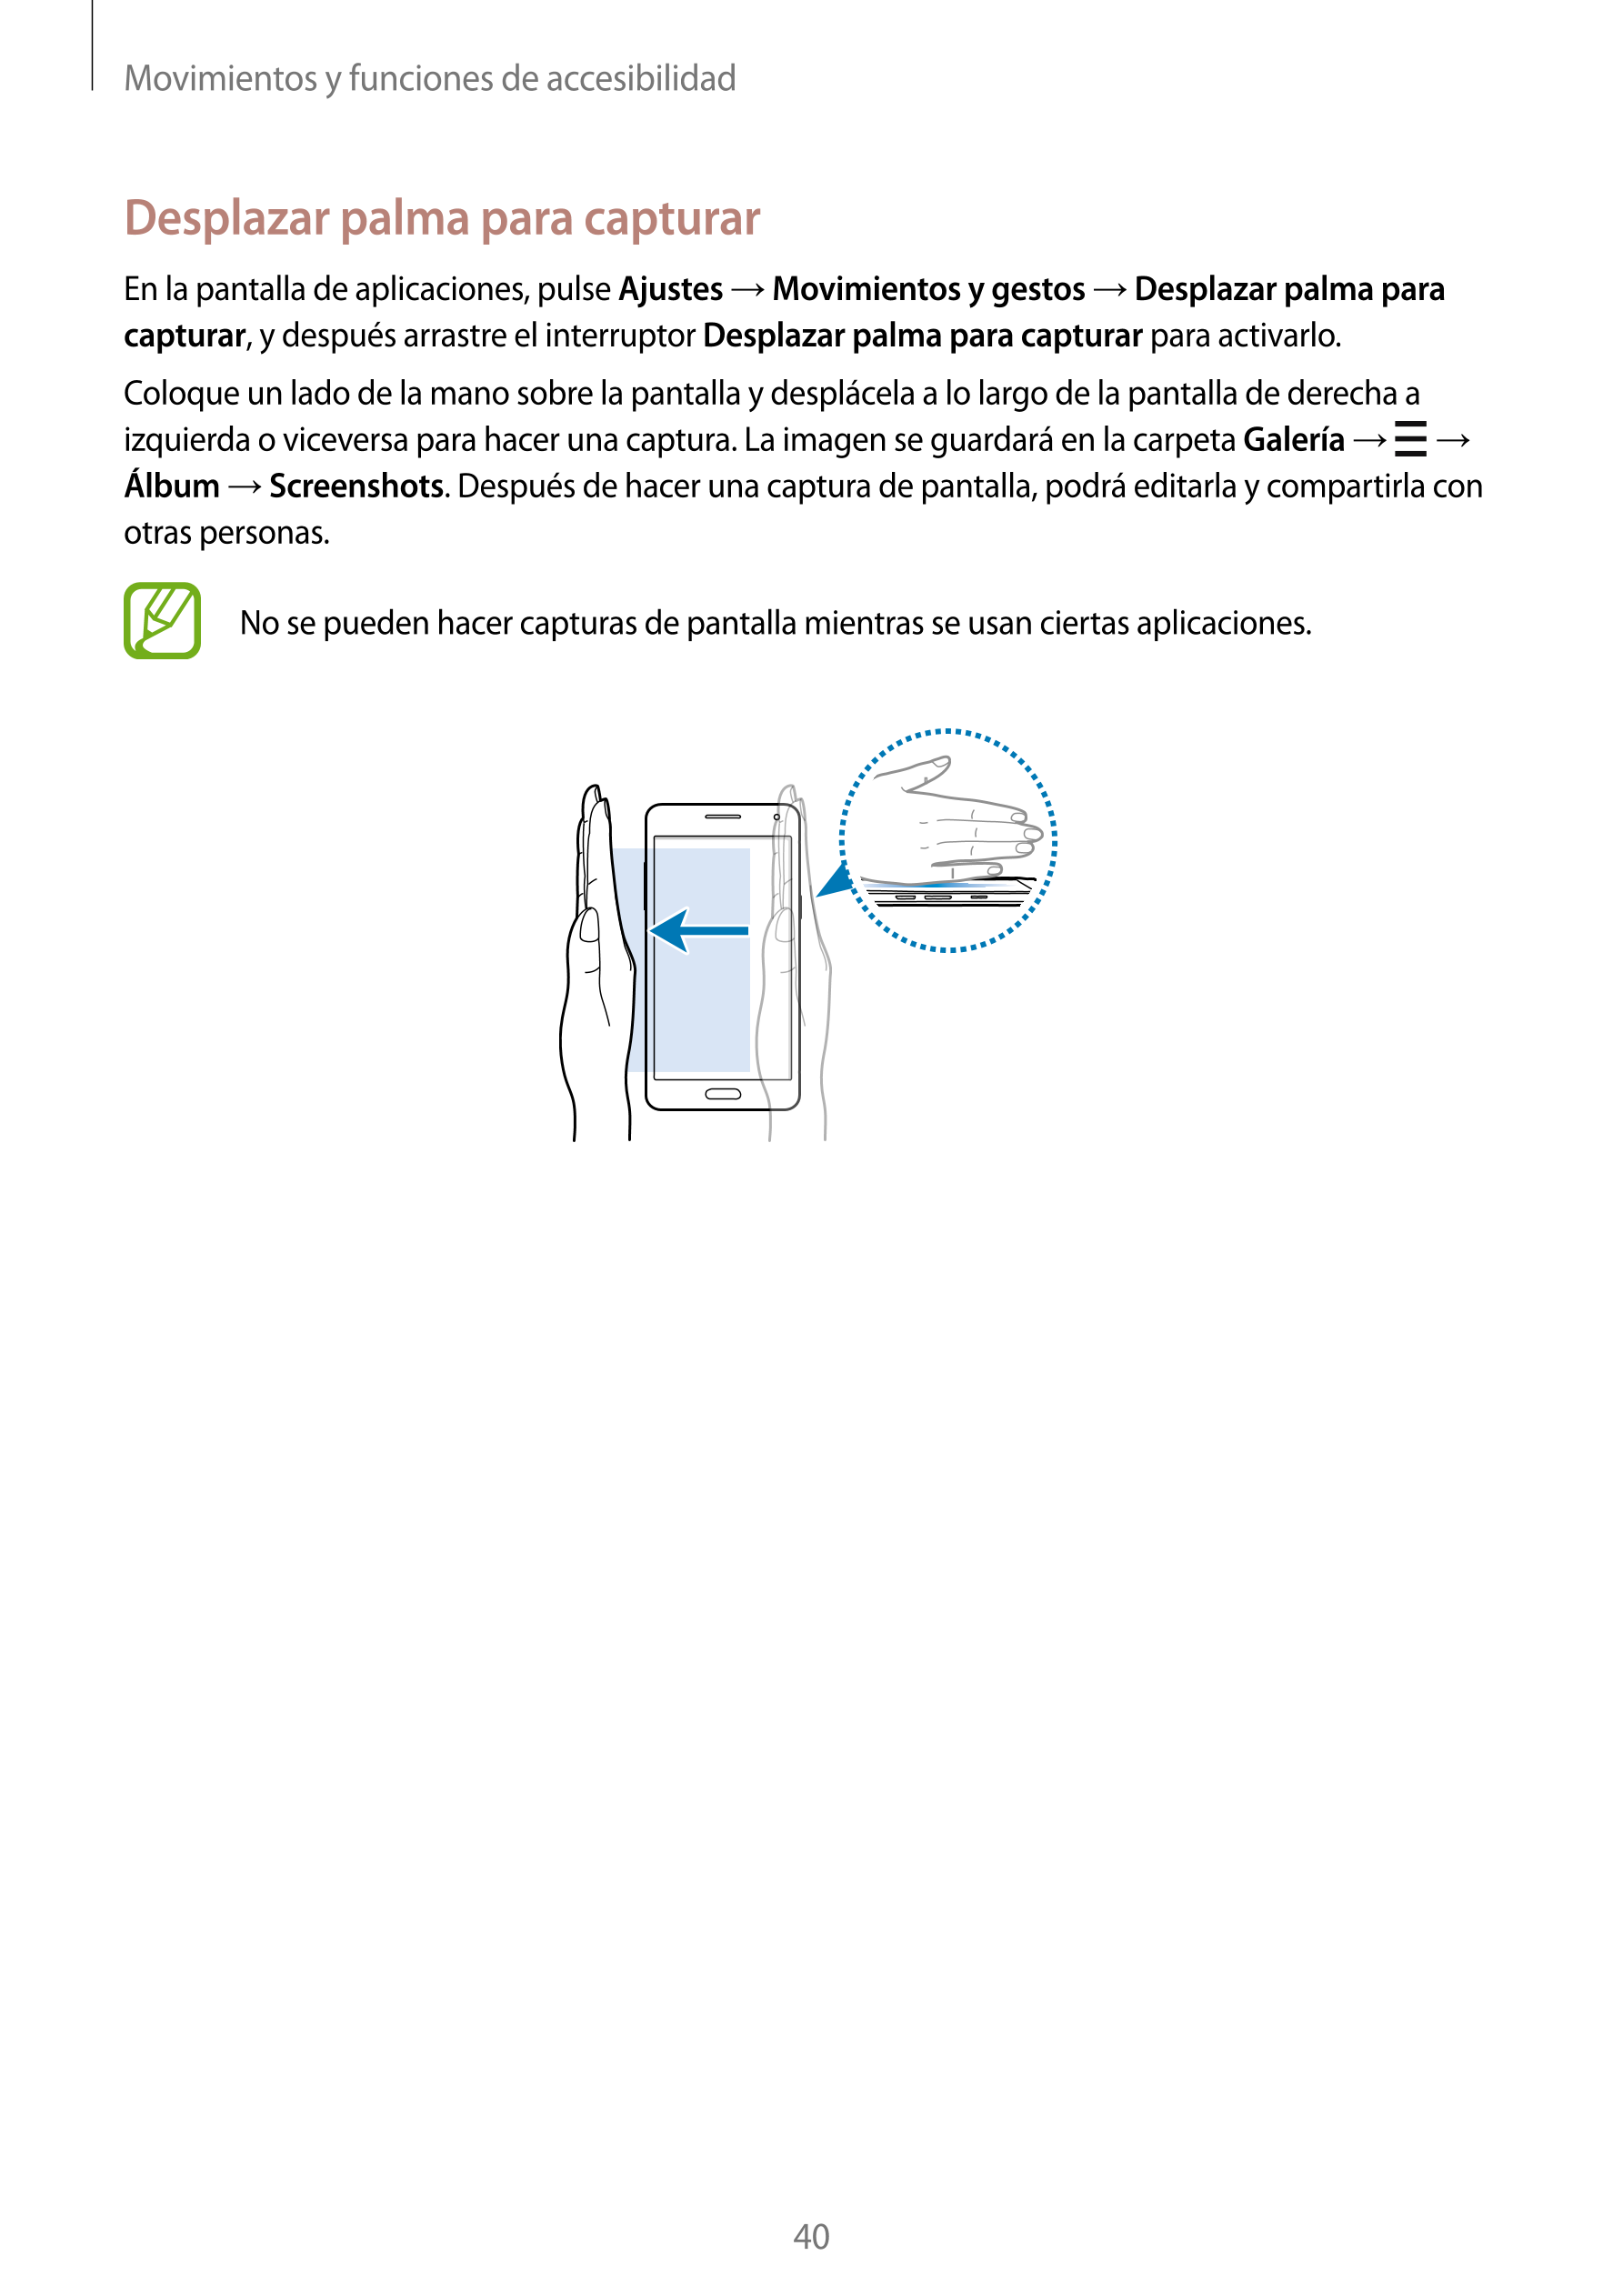 Movimientos y funciones de accesibilidad
Desplazar palma para capturar
En la pantalla de aplicaciones, pulse  Ajustes  →  Movimi